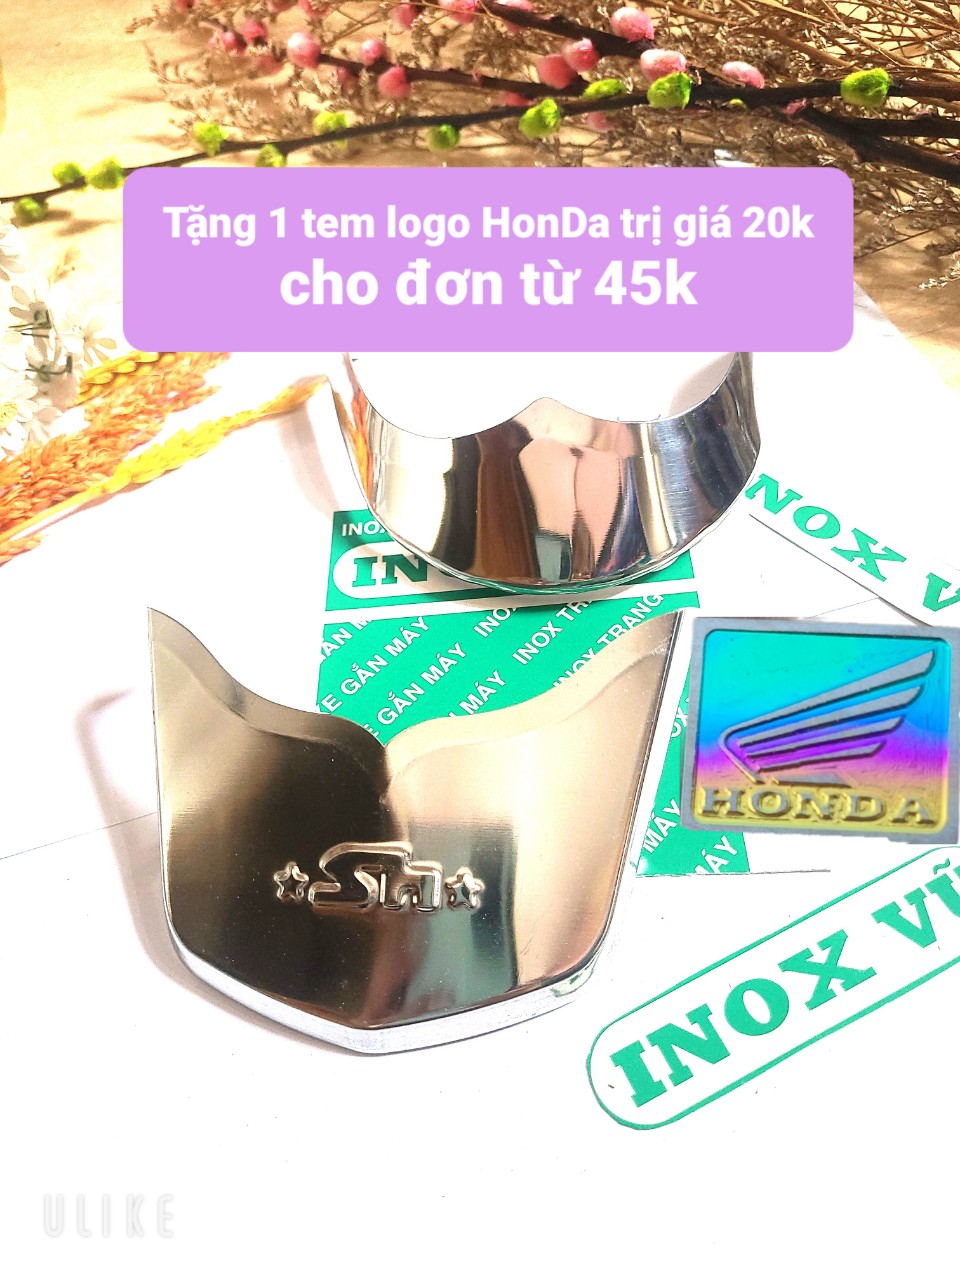 Combo Bộ ốp dè INOX xe SH MODE sản xuất năm 2020 đến 2023 + 1 tem logo Titan Honda giá 1 cặp tại xưởng INOX Vũ